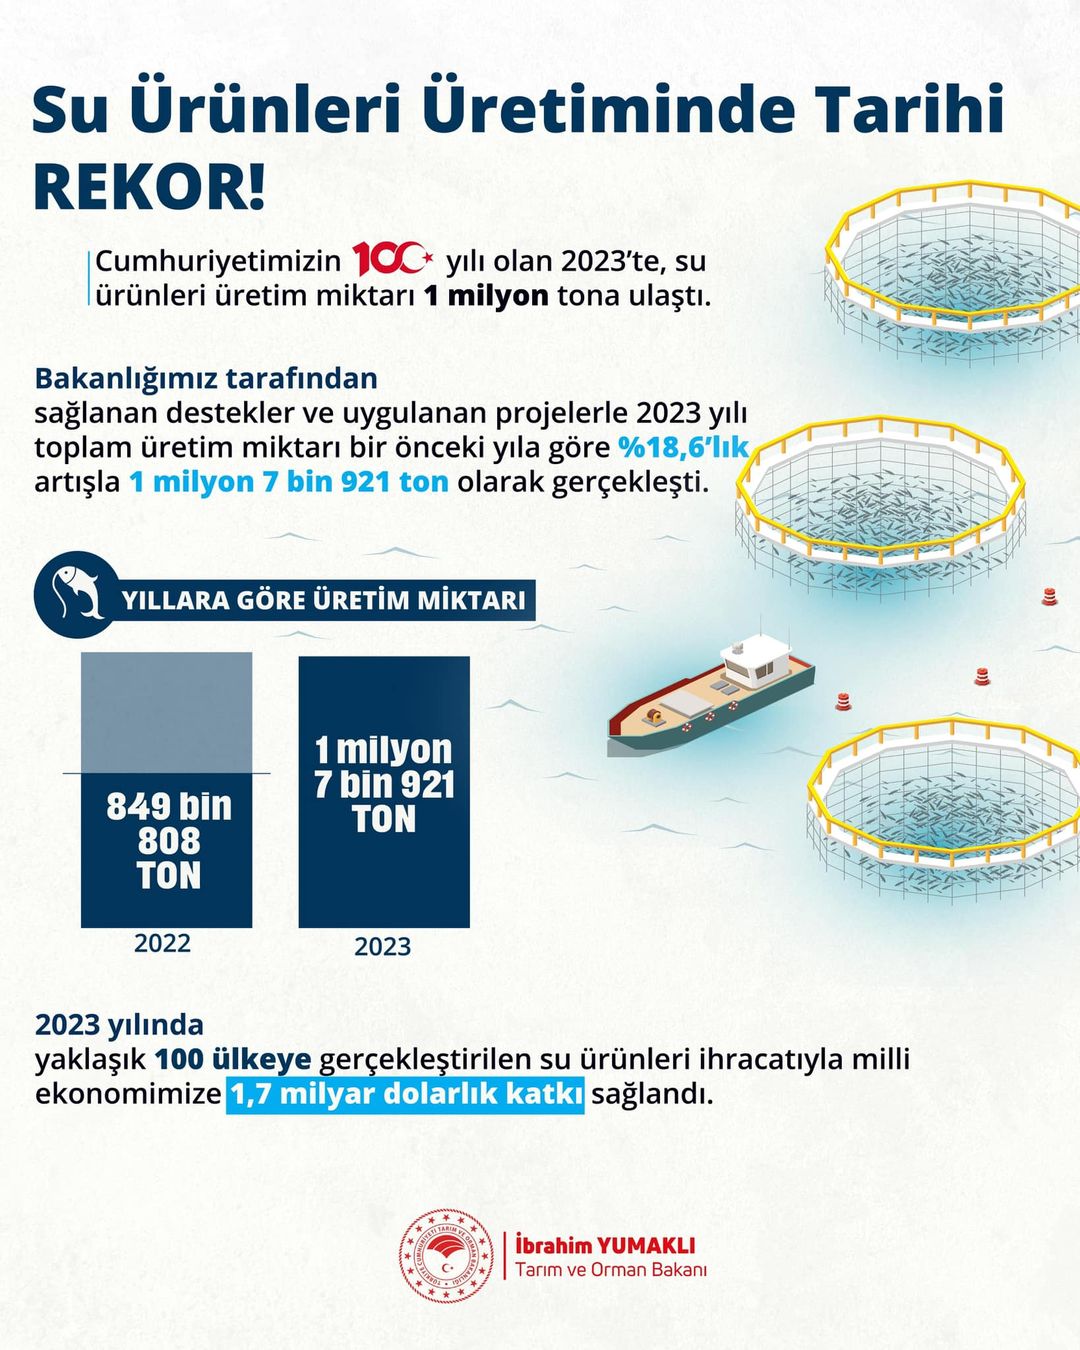 Türkiye Su Ürünleri Üretiminde Tarihi Rekor Kırdı